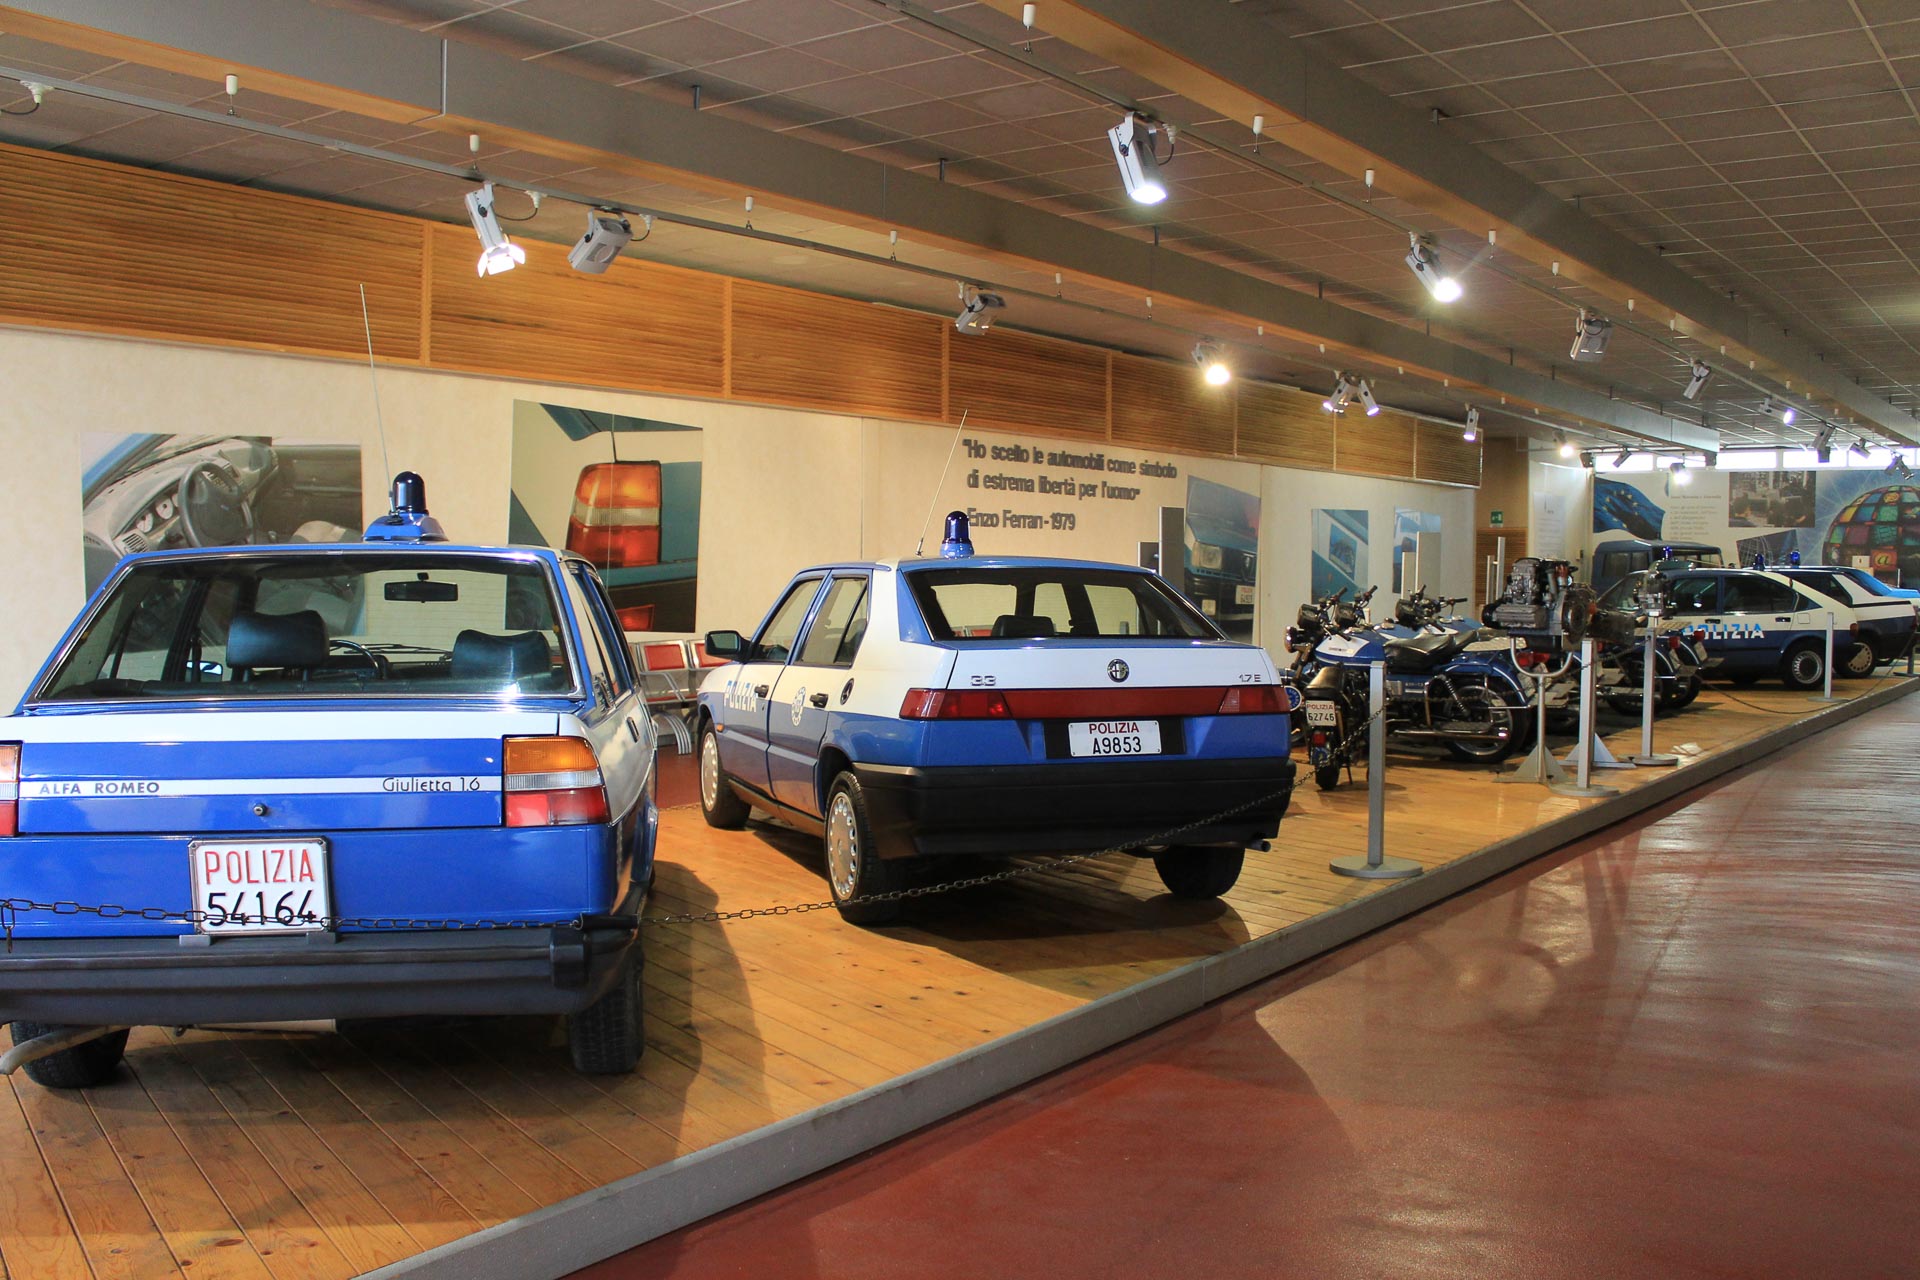 Musées de l'automobile